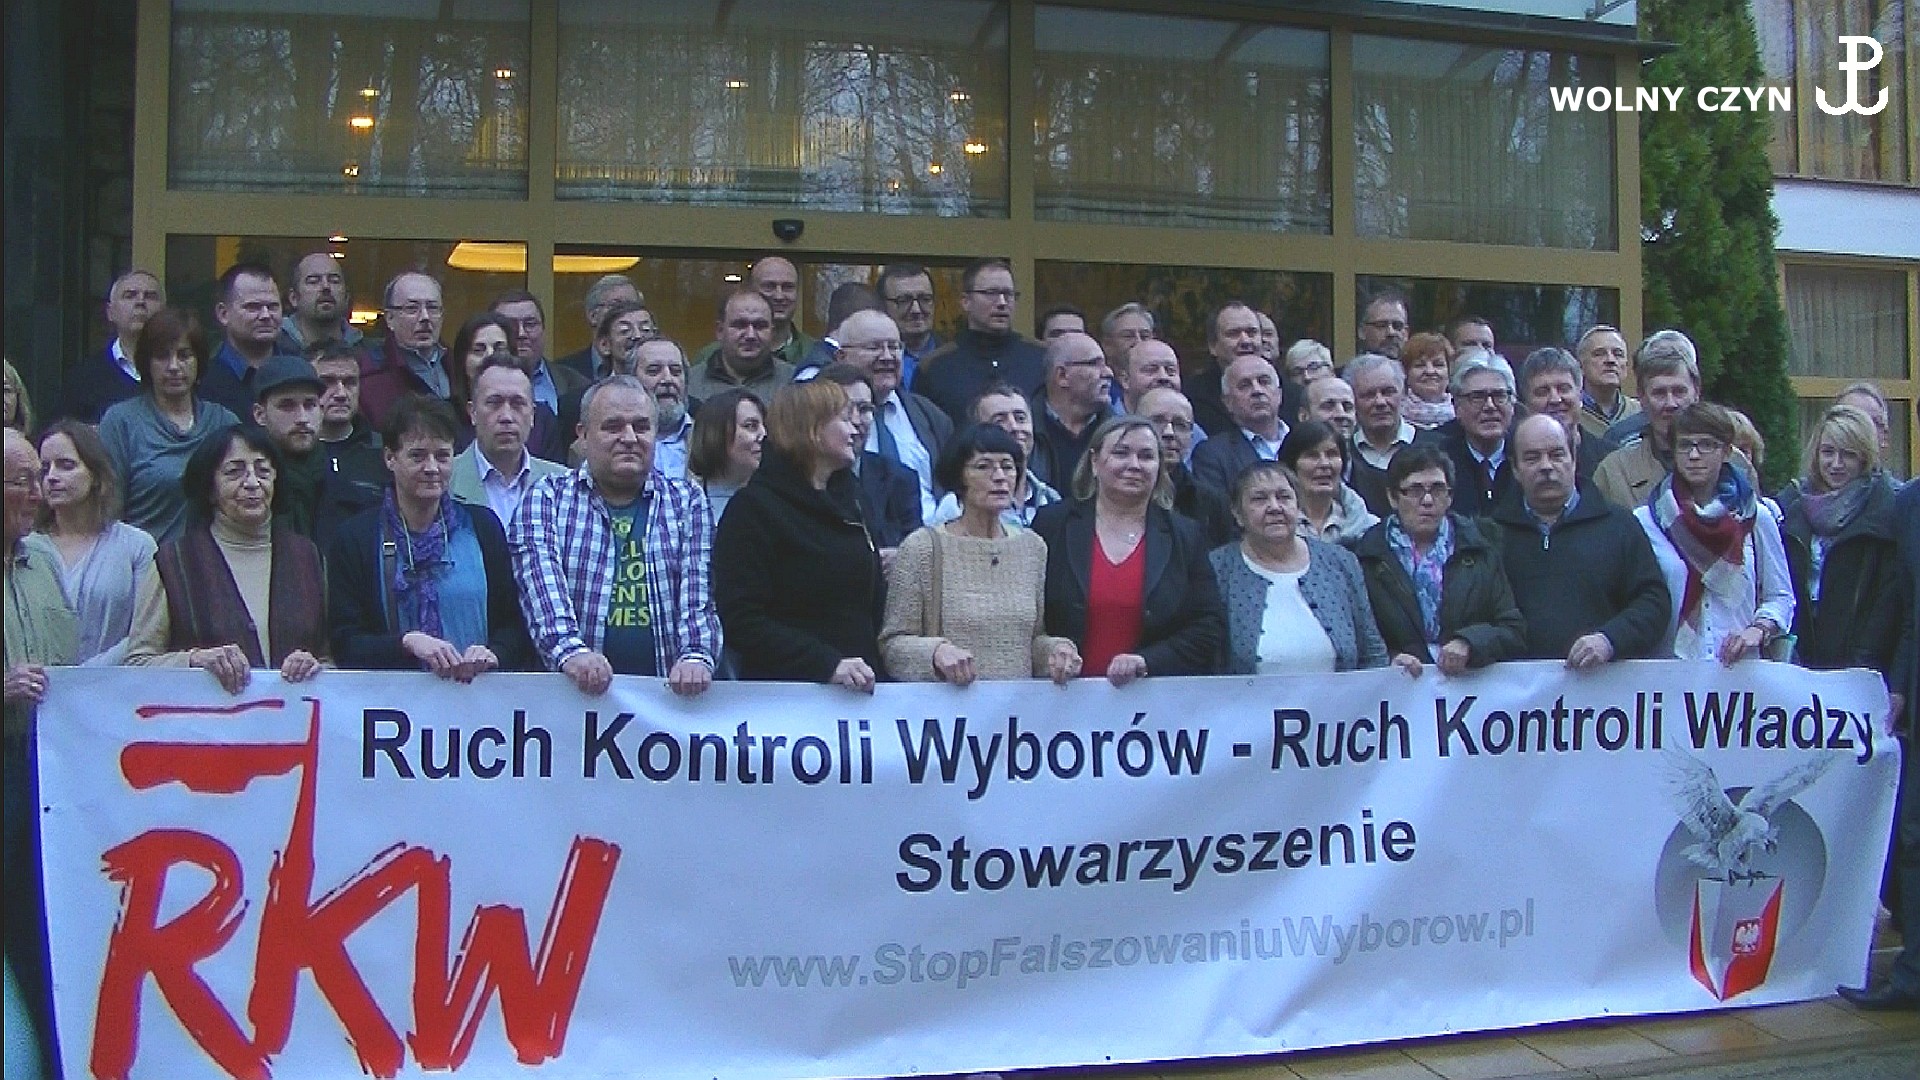 WOLNY CZYN: Szkolenia RKW-RKW w Kazimierzu Dolnym